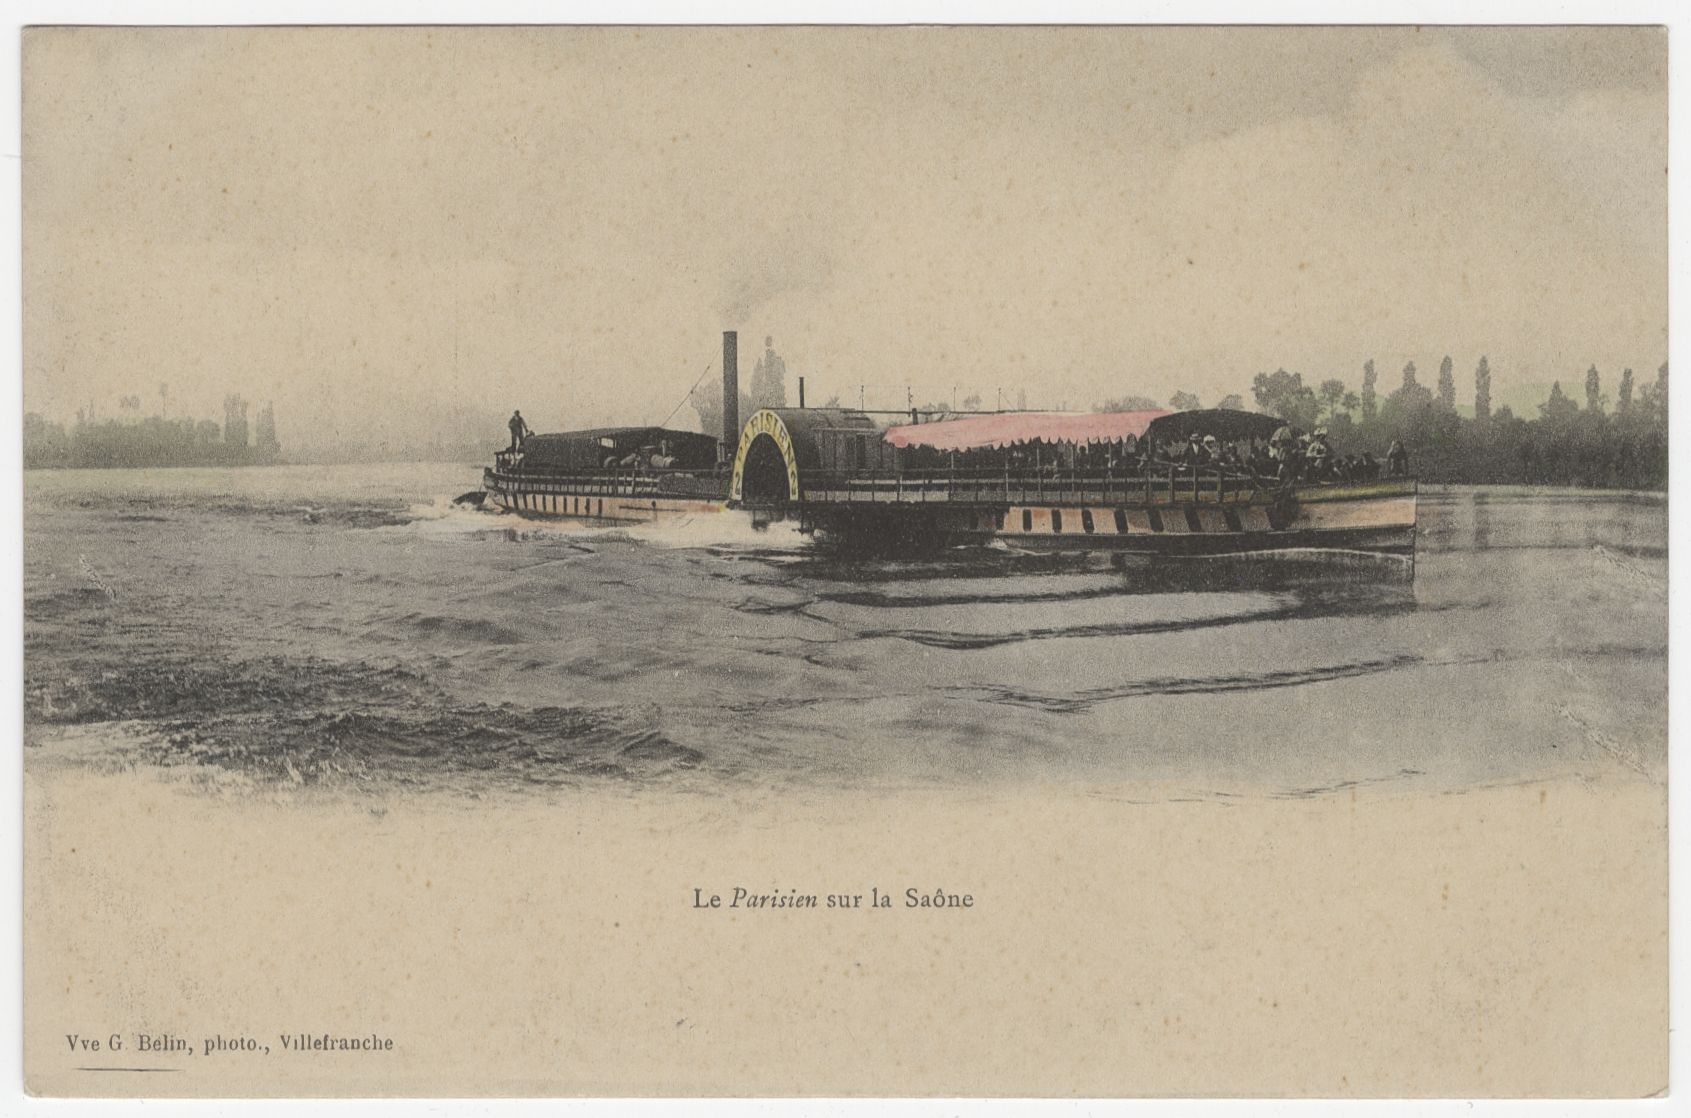 Le Parisien sur la Saône : carte postale (vers 1910, cote : 4FI/3339)